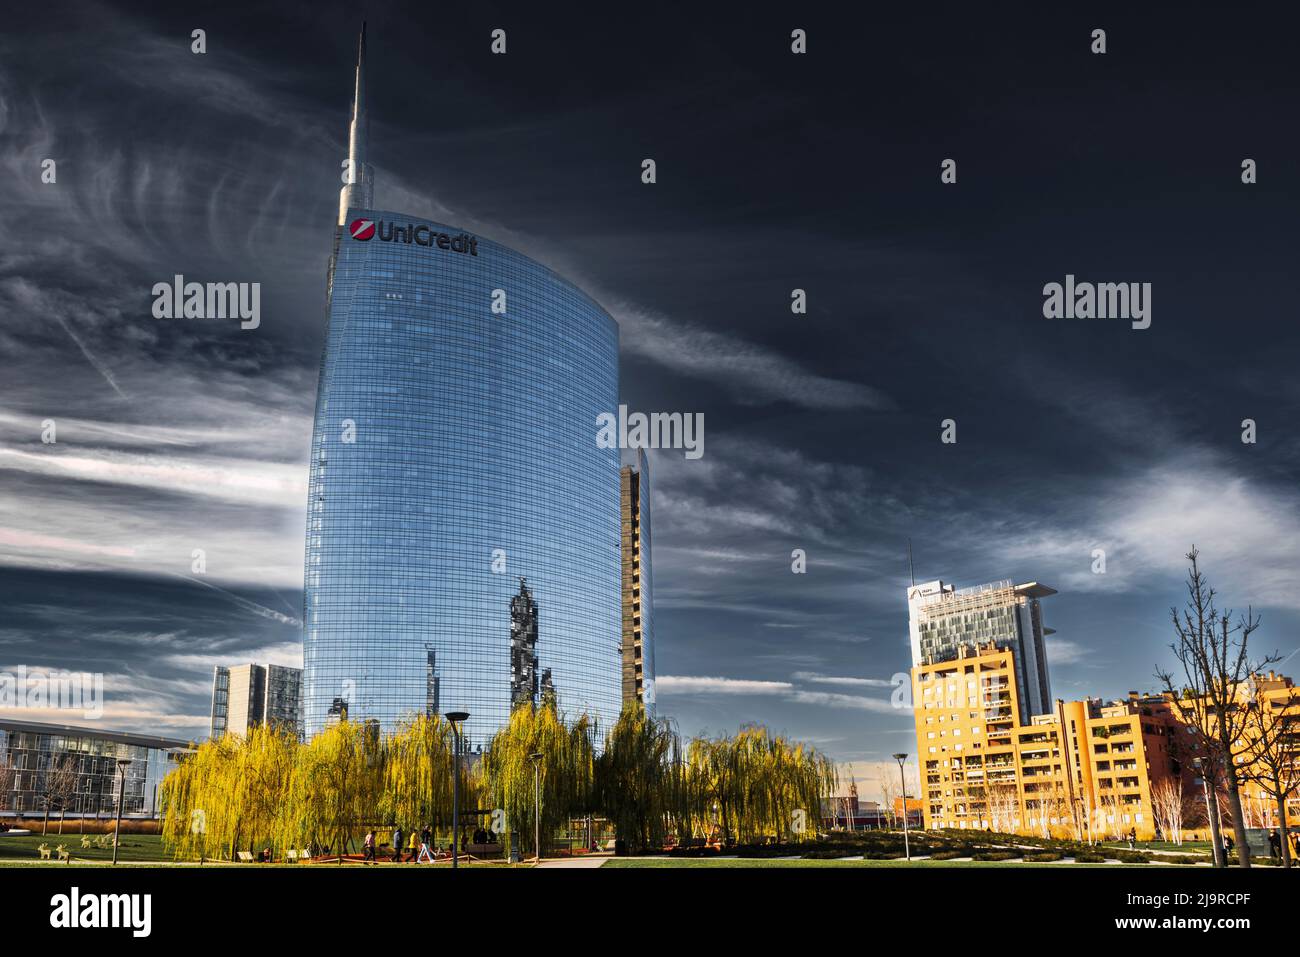 Il grattacielo della banca UniCredit si staglia contro un bel cielo. Architettura moderna a Milano. Foto Stock